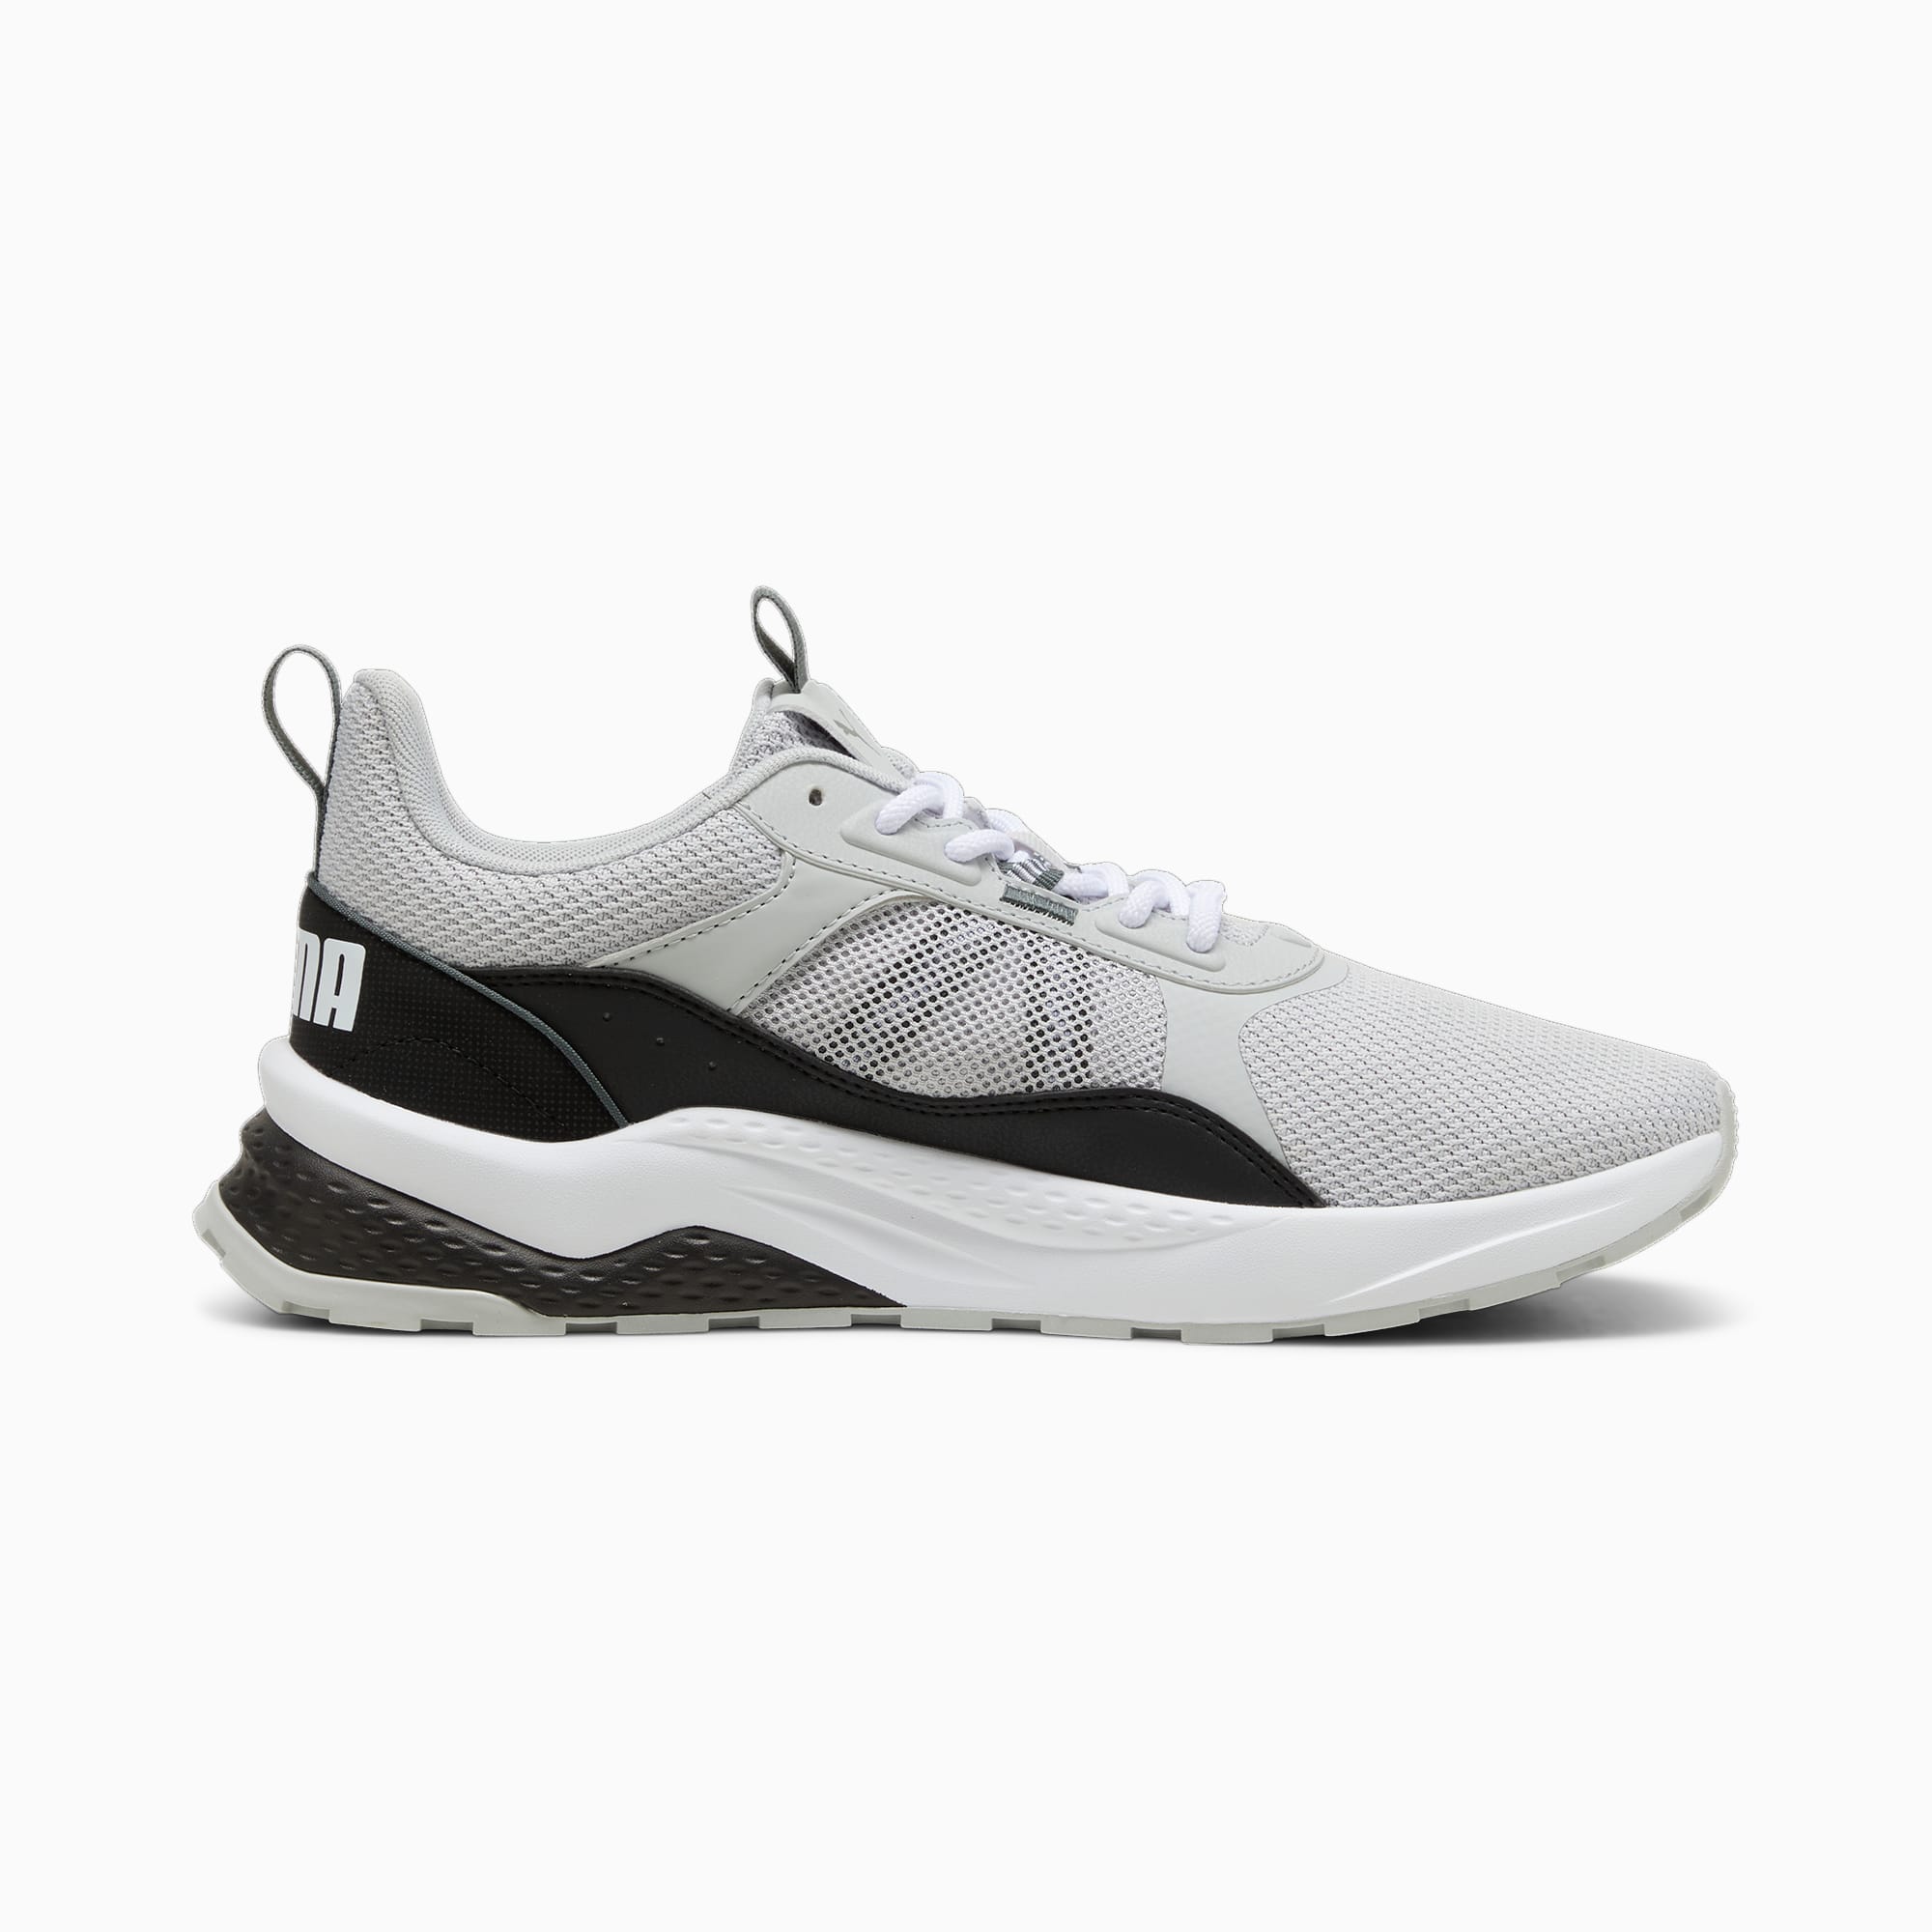 PUMA Chaussure Sneakers Anzarun 2.0, Blanc/Noir/Gris